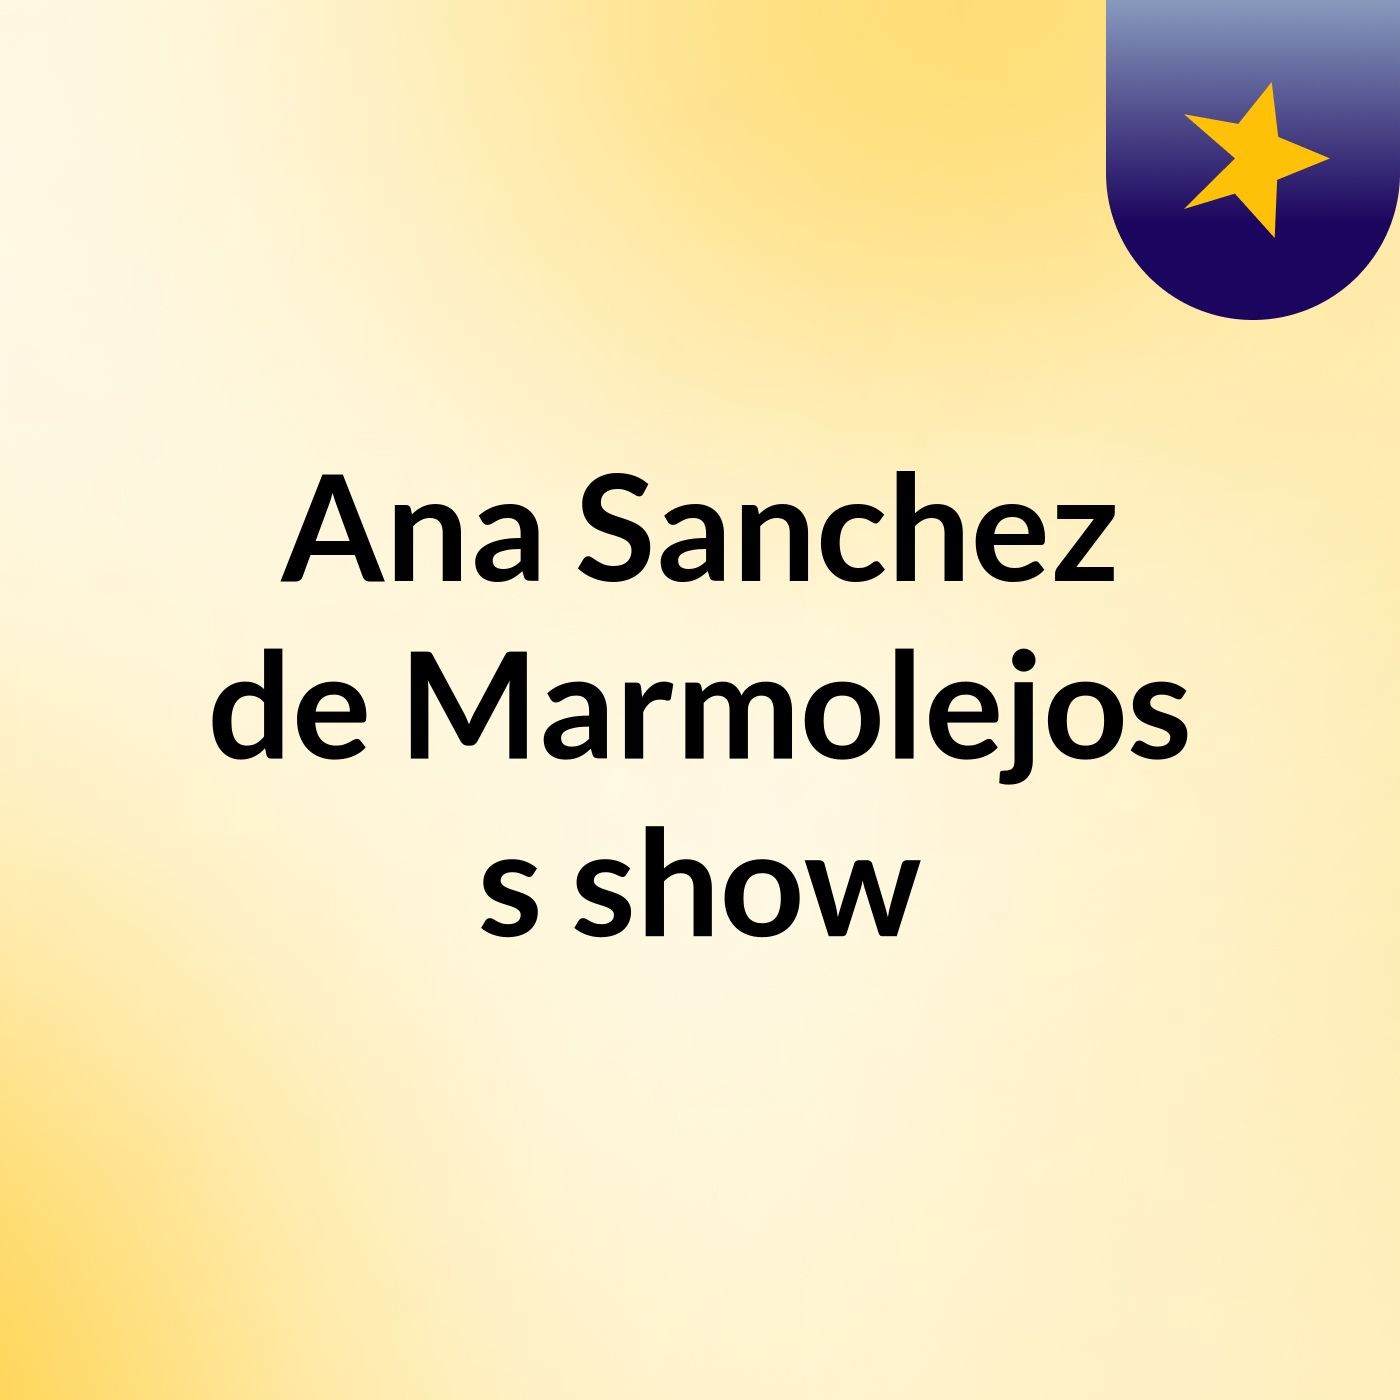 Ana Sanchez de Marmolejos's show